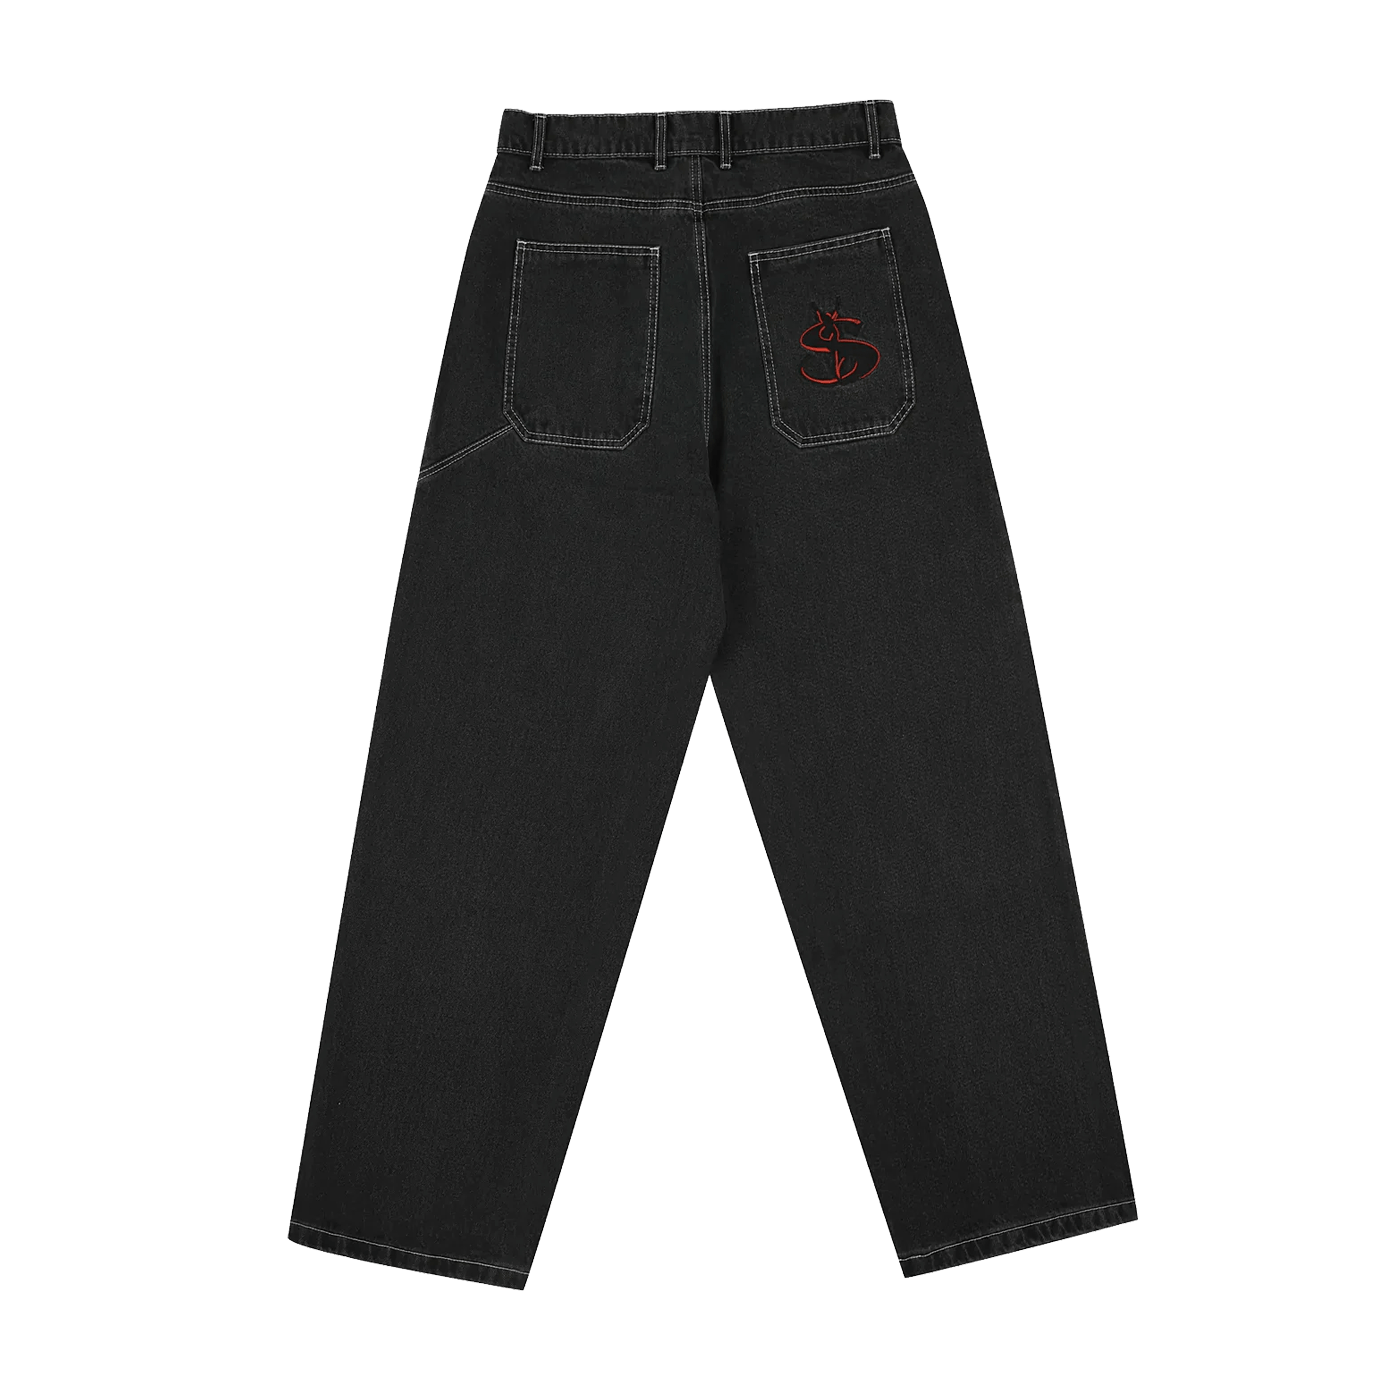 売り正規店 Yardsale Phantasy Jeans black Mサイズ - パンツ